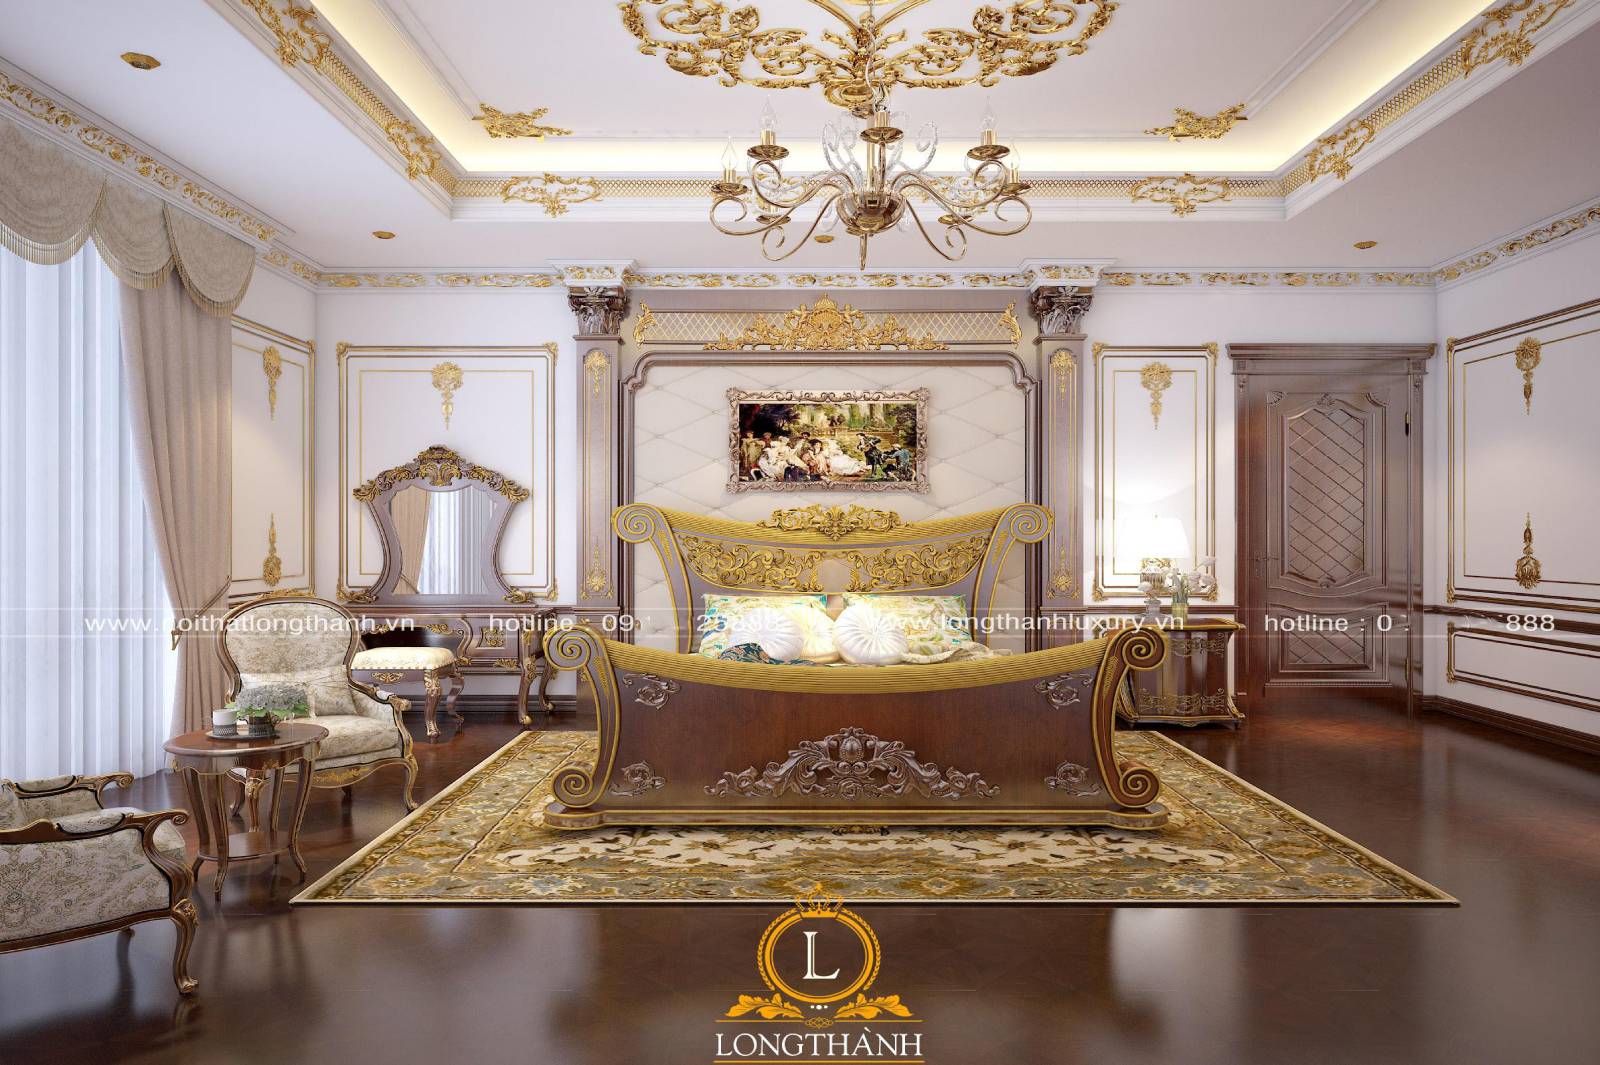 Thiết kế phòng ngủ sử dụng trần thạch cao sát vàng ở các chi tiết